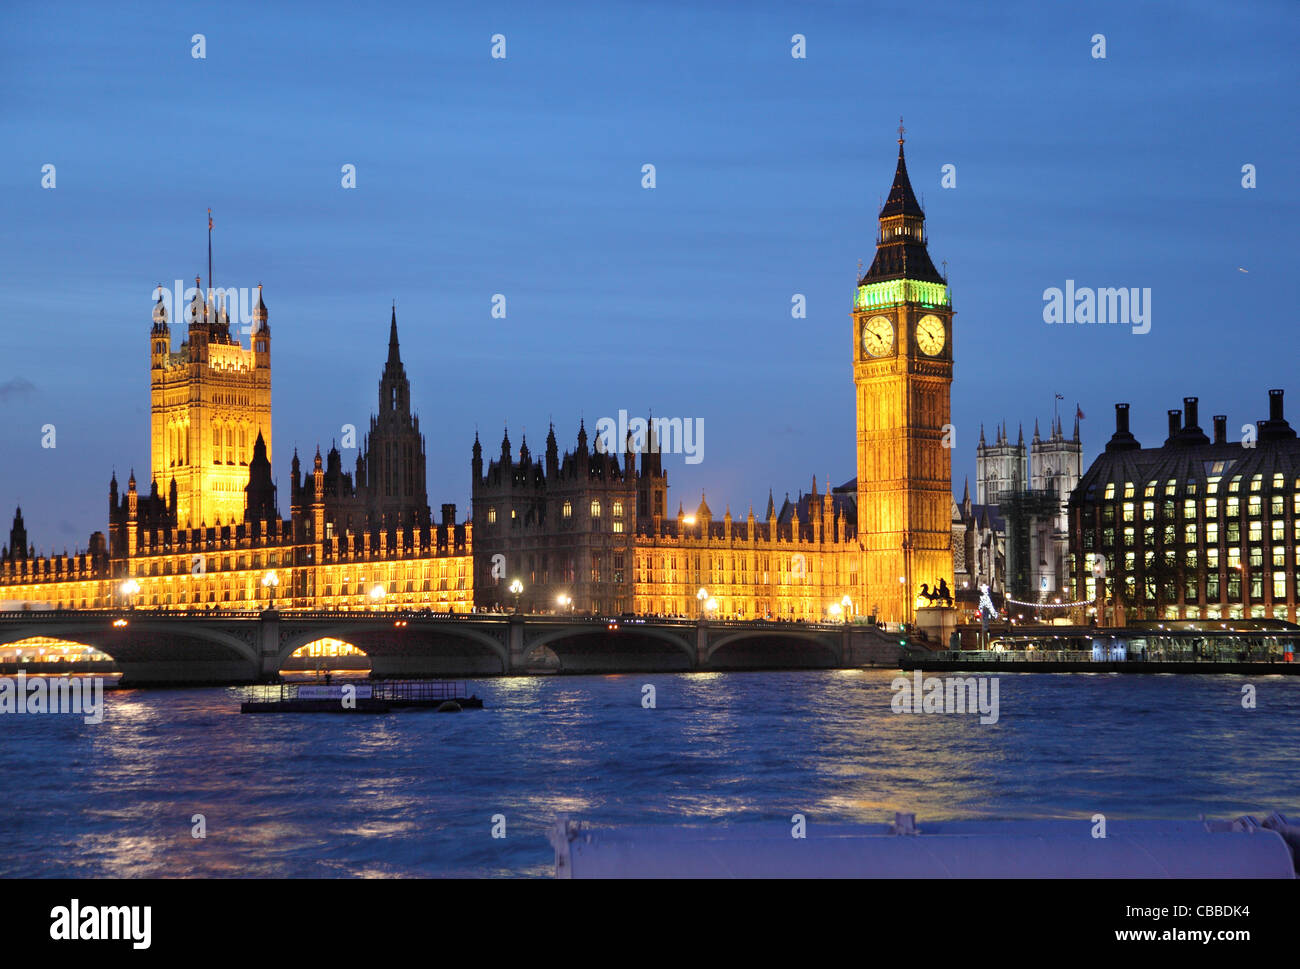 Casas del Parlamento, Big Ben, River Thames y la Abadía de Westminster por la noche. Foto de stock